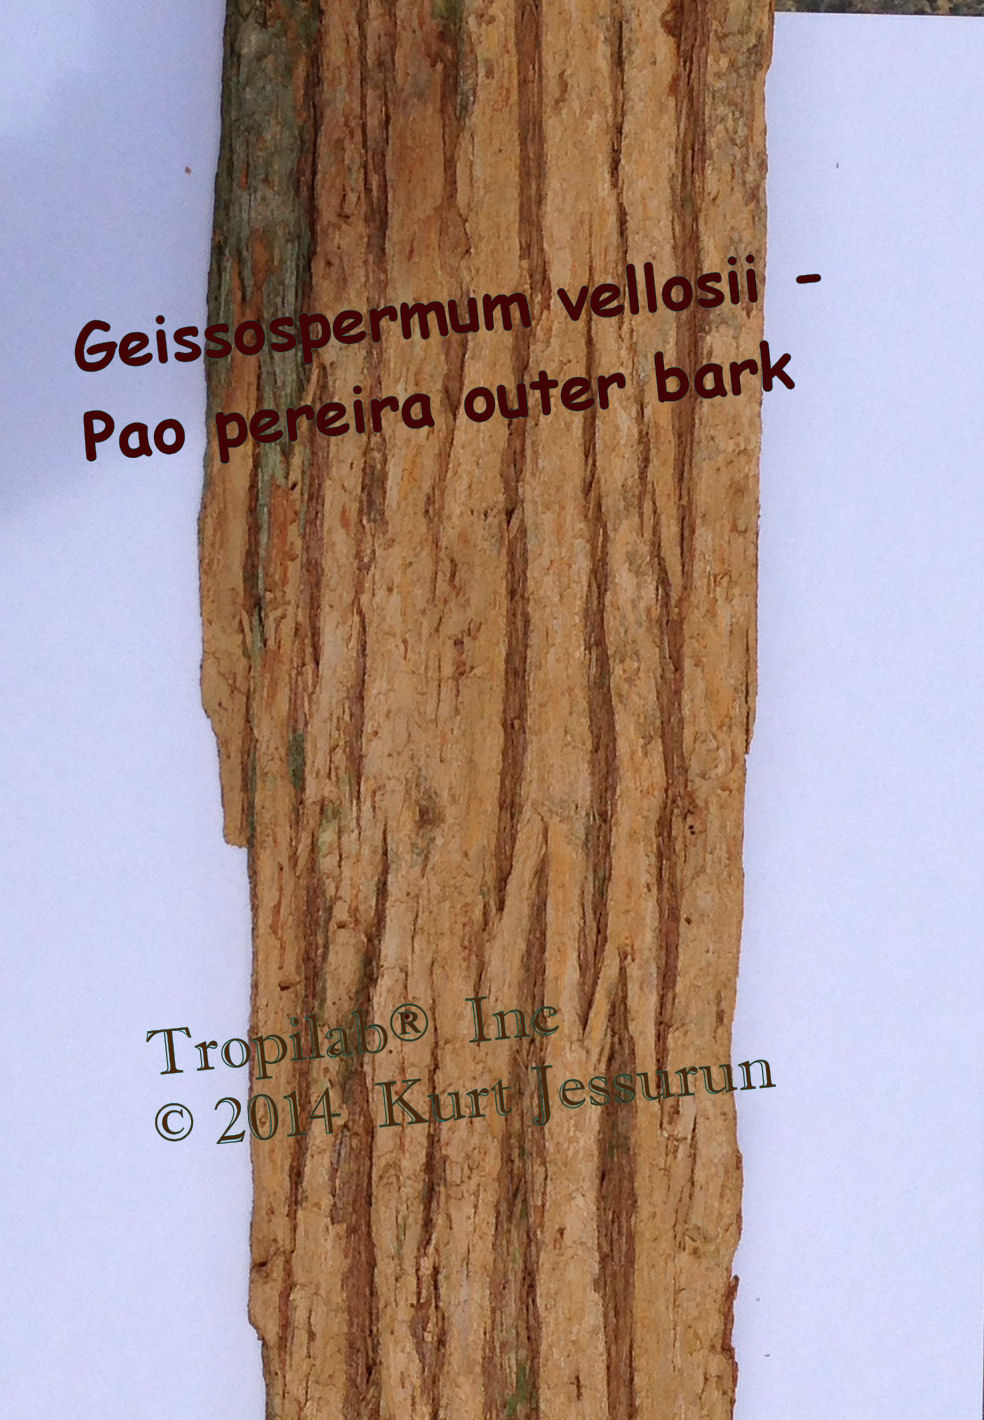 Geissospermum vellosii-Pao pereira outer bark